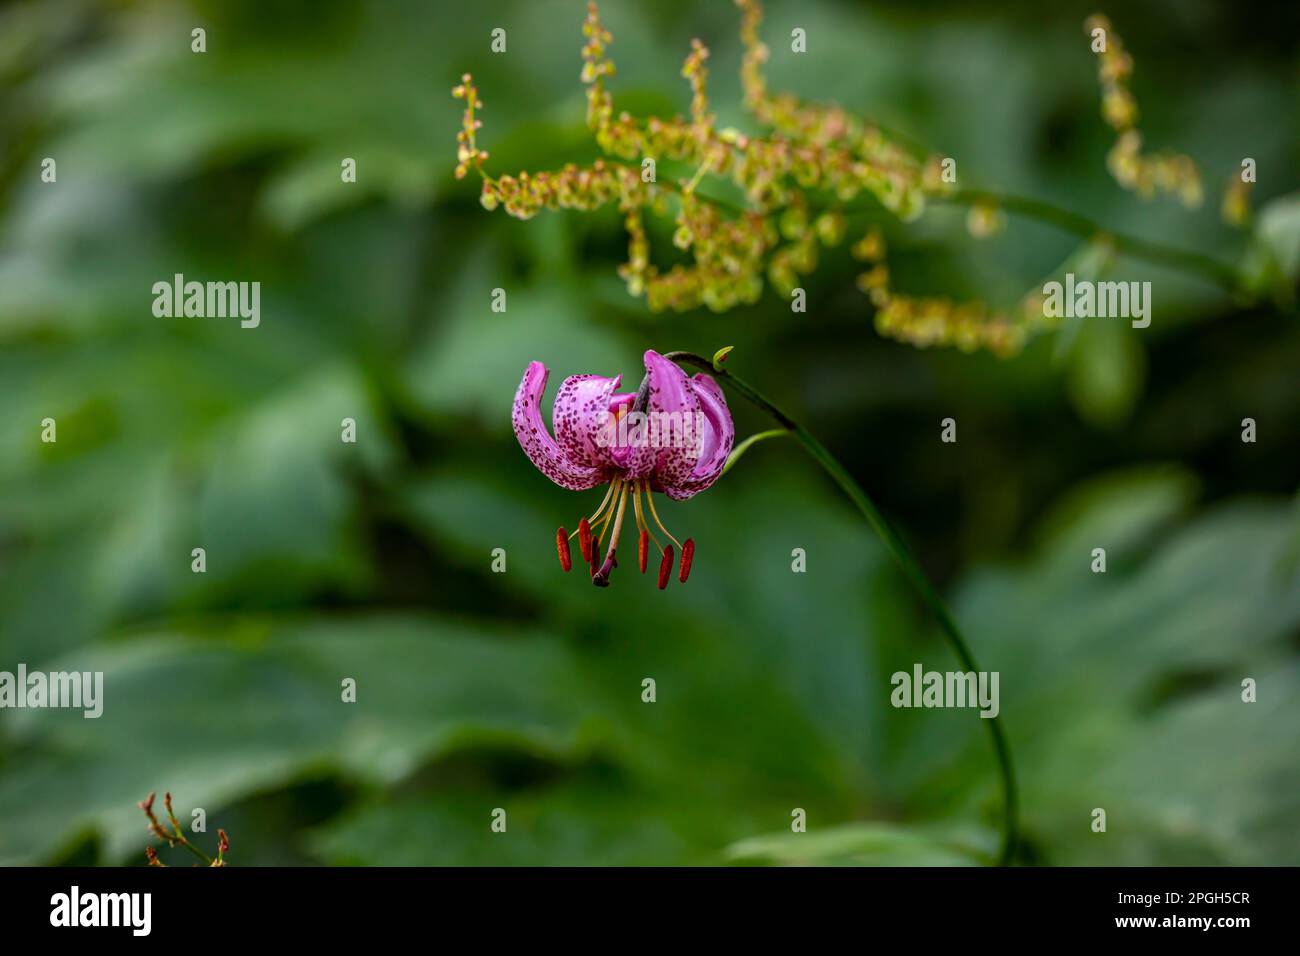 Lilium martagon flor que crece en el bosque, cerca Foto de stock